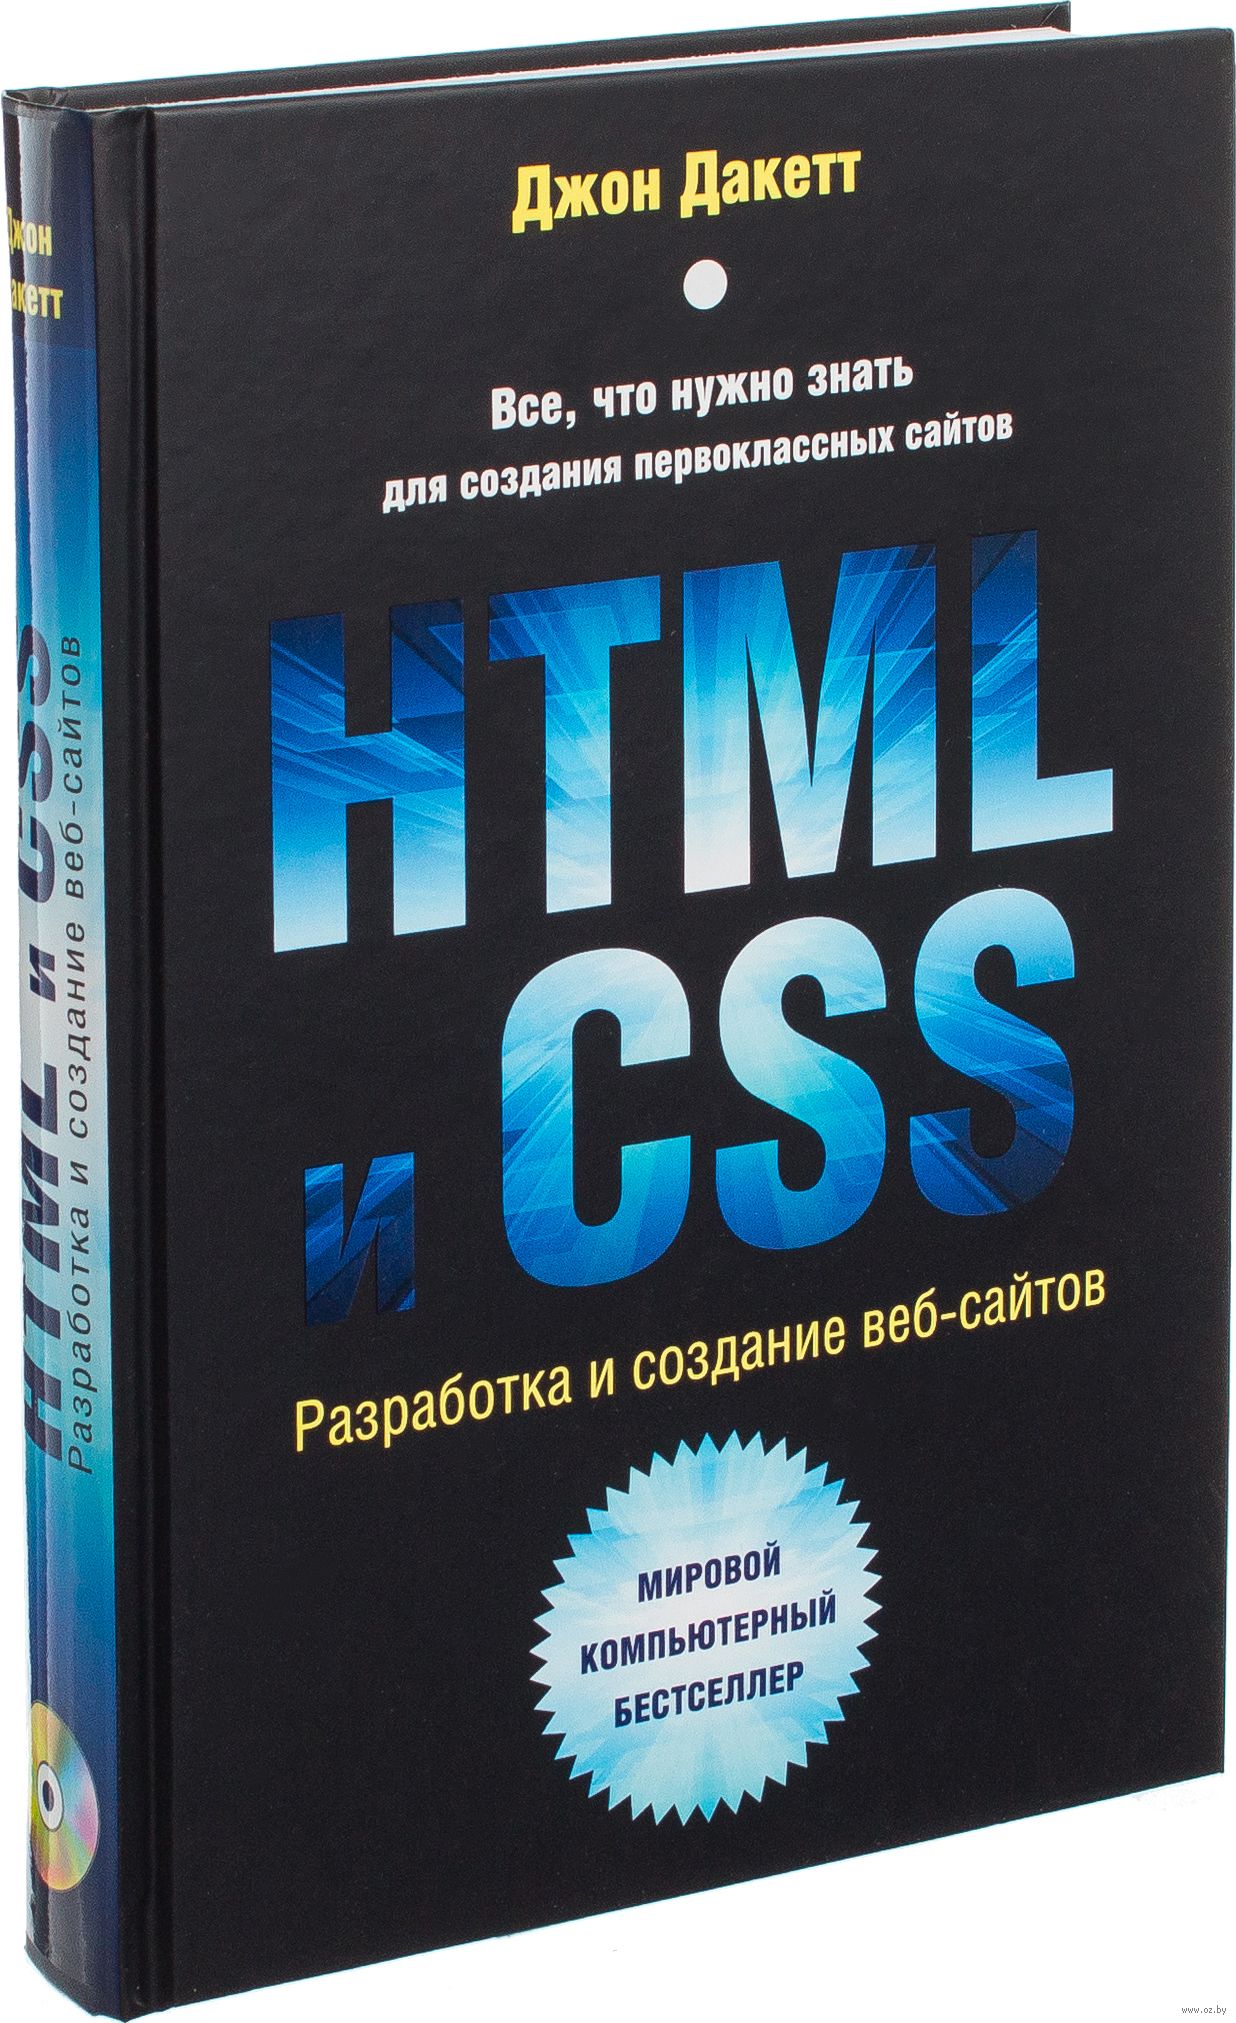 Создание веб сайтов книга программа для создания для сайта html скачать